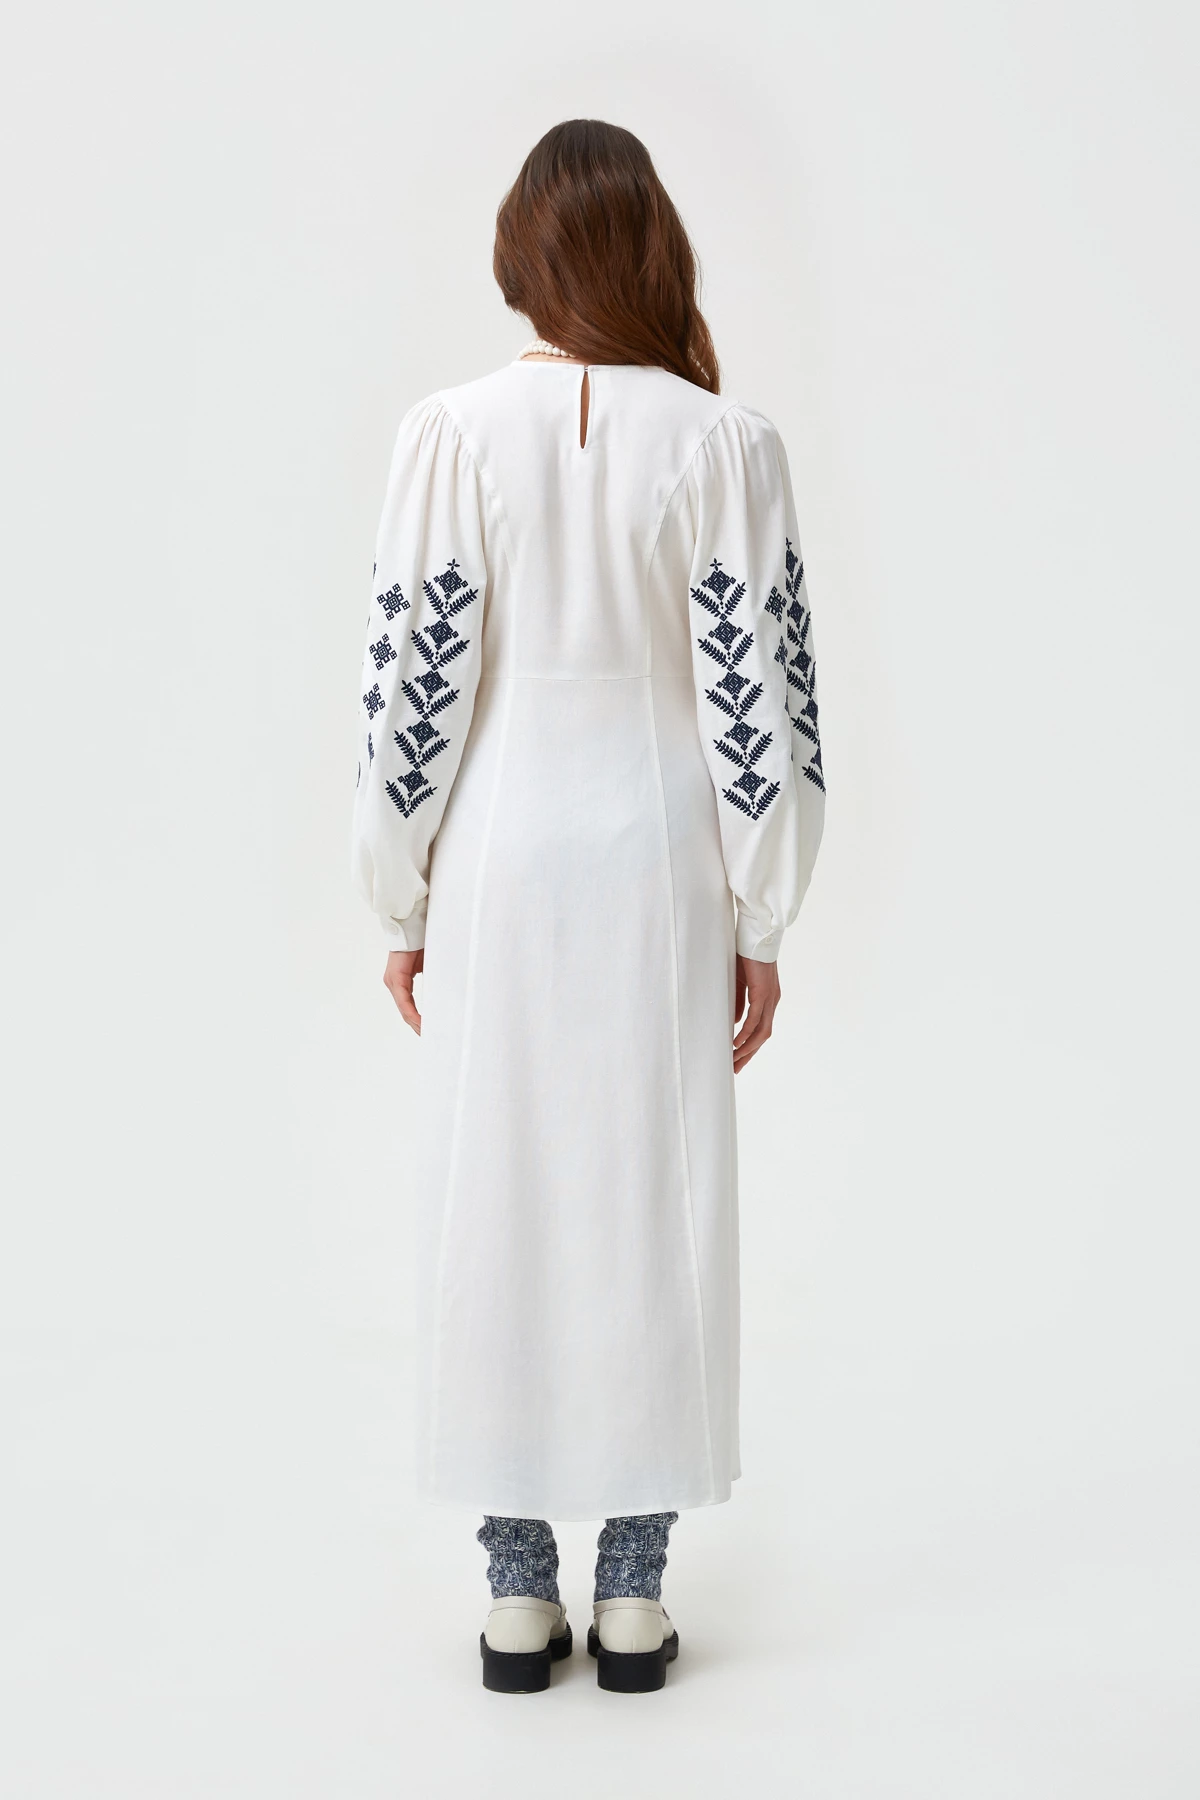 Молочна вишита сукня в орнамент ромби з льоном, фото 6